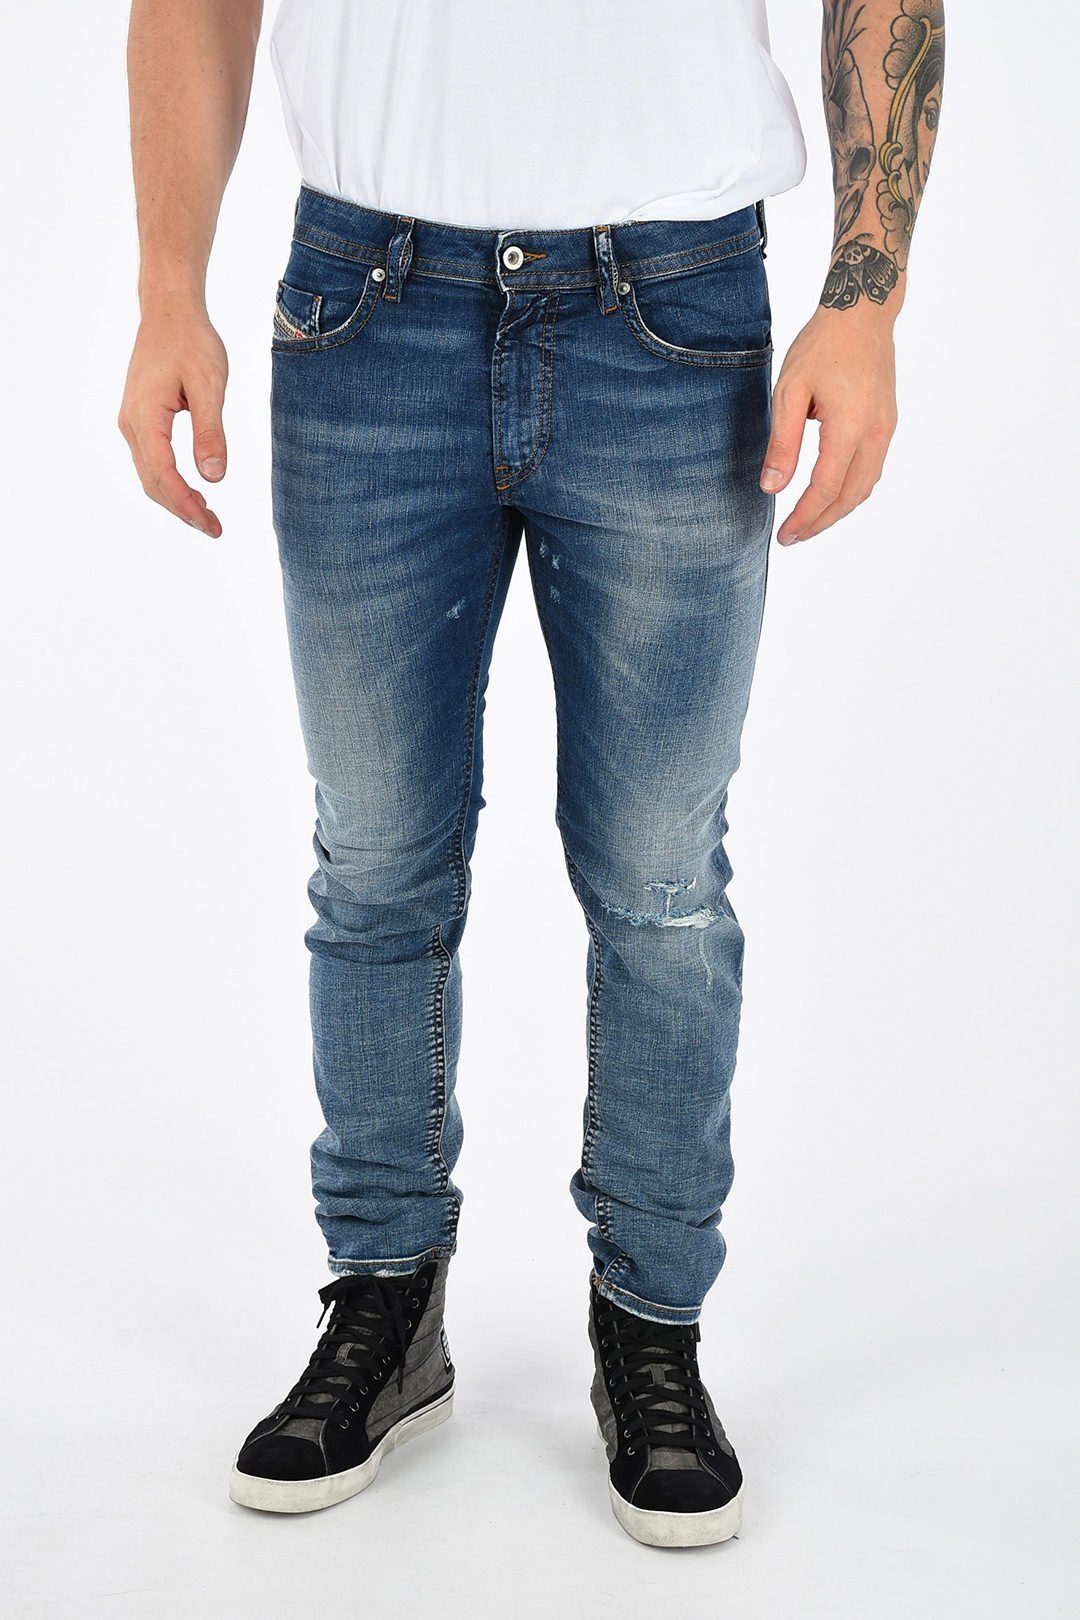 Diesel Slim-fit-Jeans Röhrenjeans, Used-Look, Länge: Stretch, Thommer 5-Pocket-Style, 084TW Herren L32 Blau, Vintage